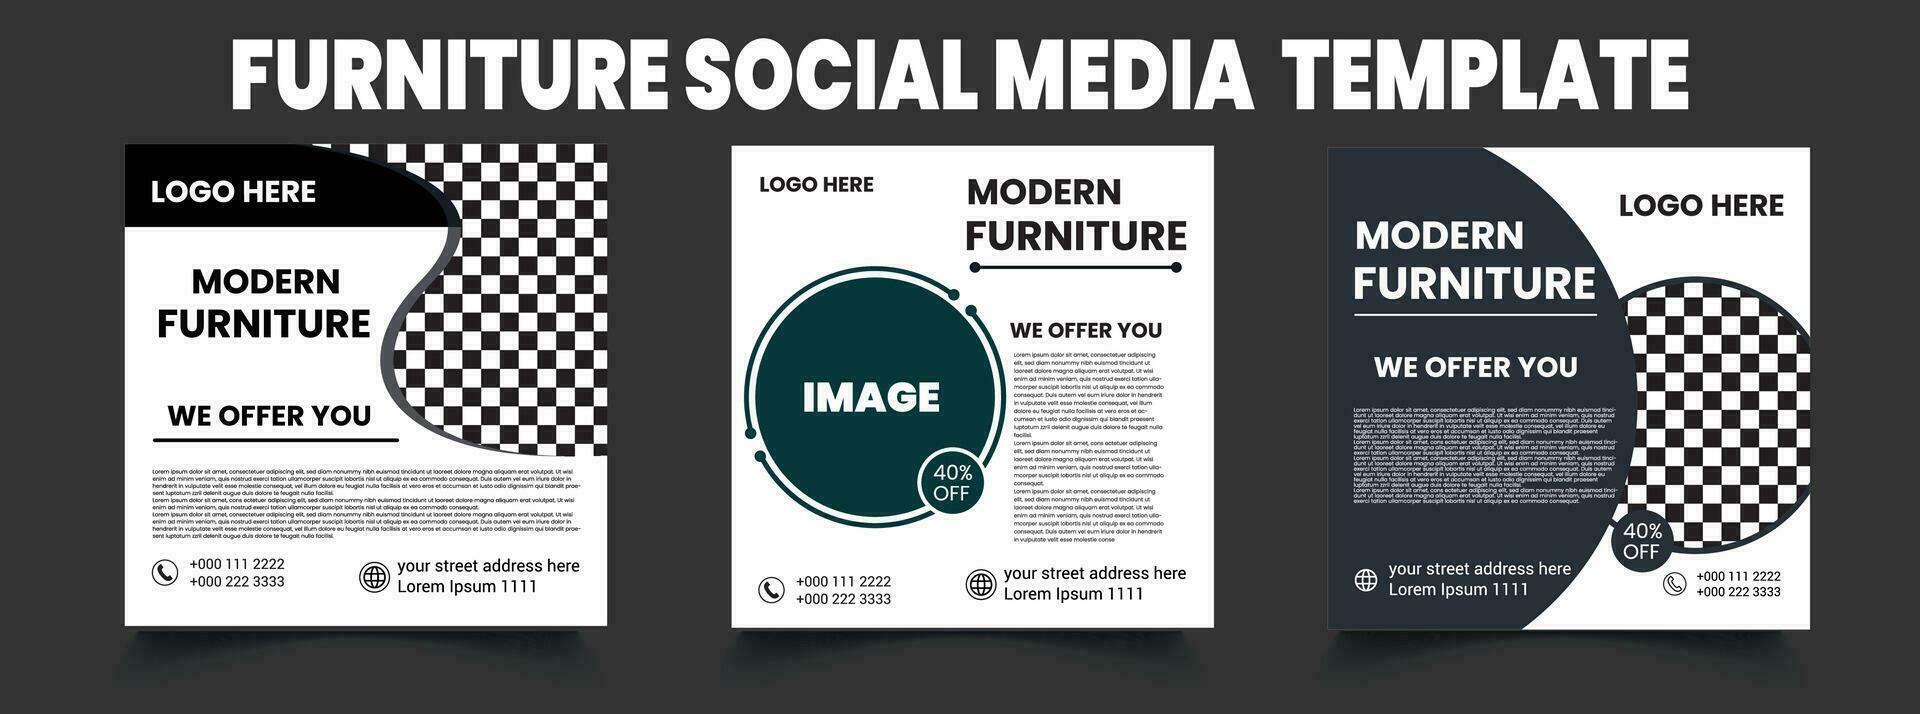 mueble social medios de comunicación modelo diseño. vector